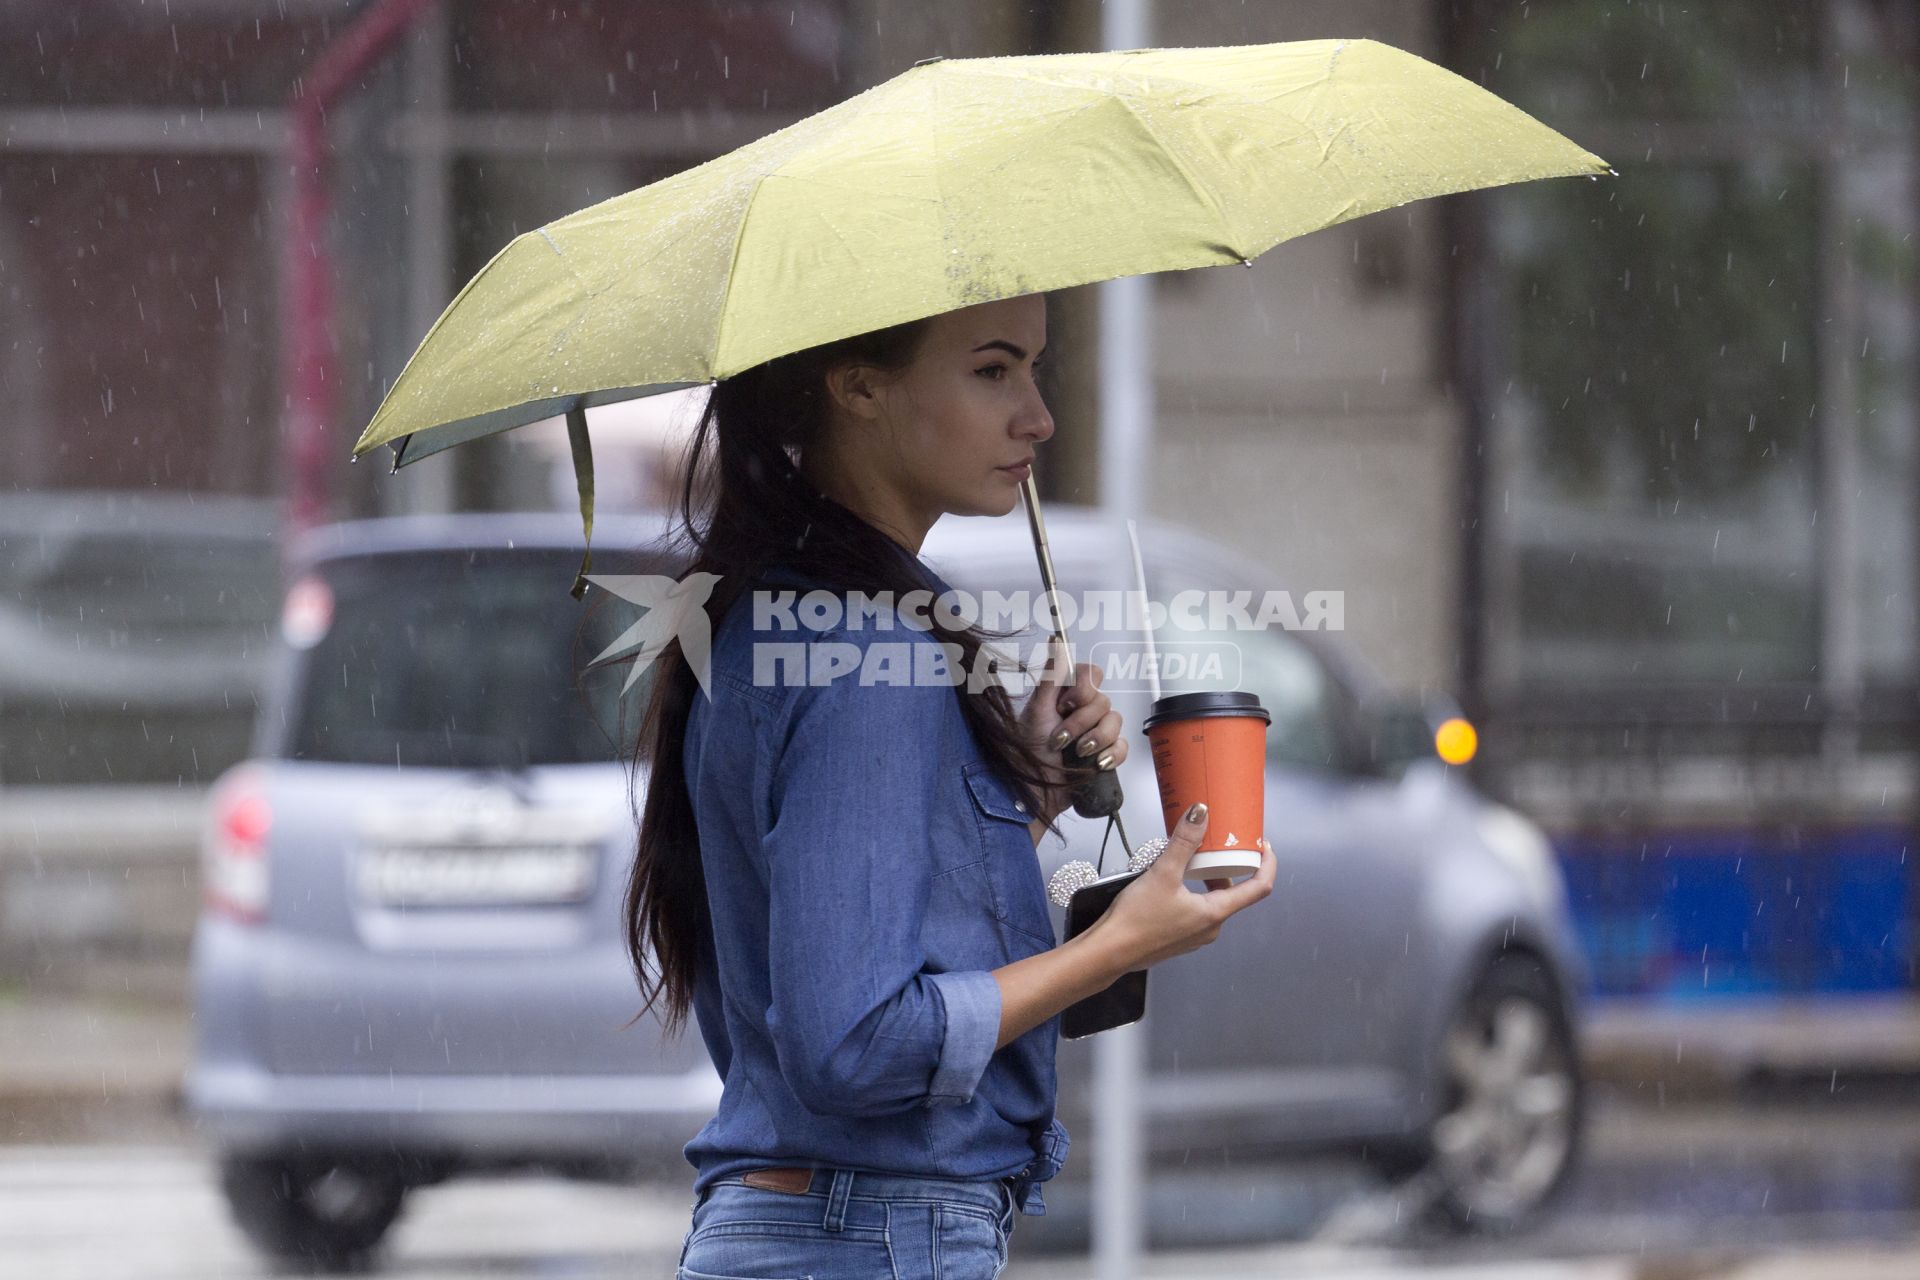 Иркутск. Девушка во время дождя на одной из улиц города.